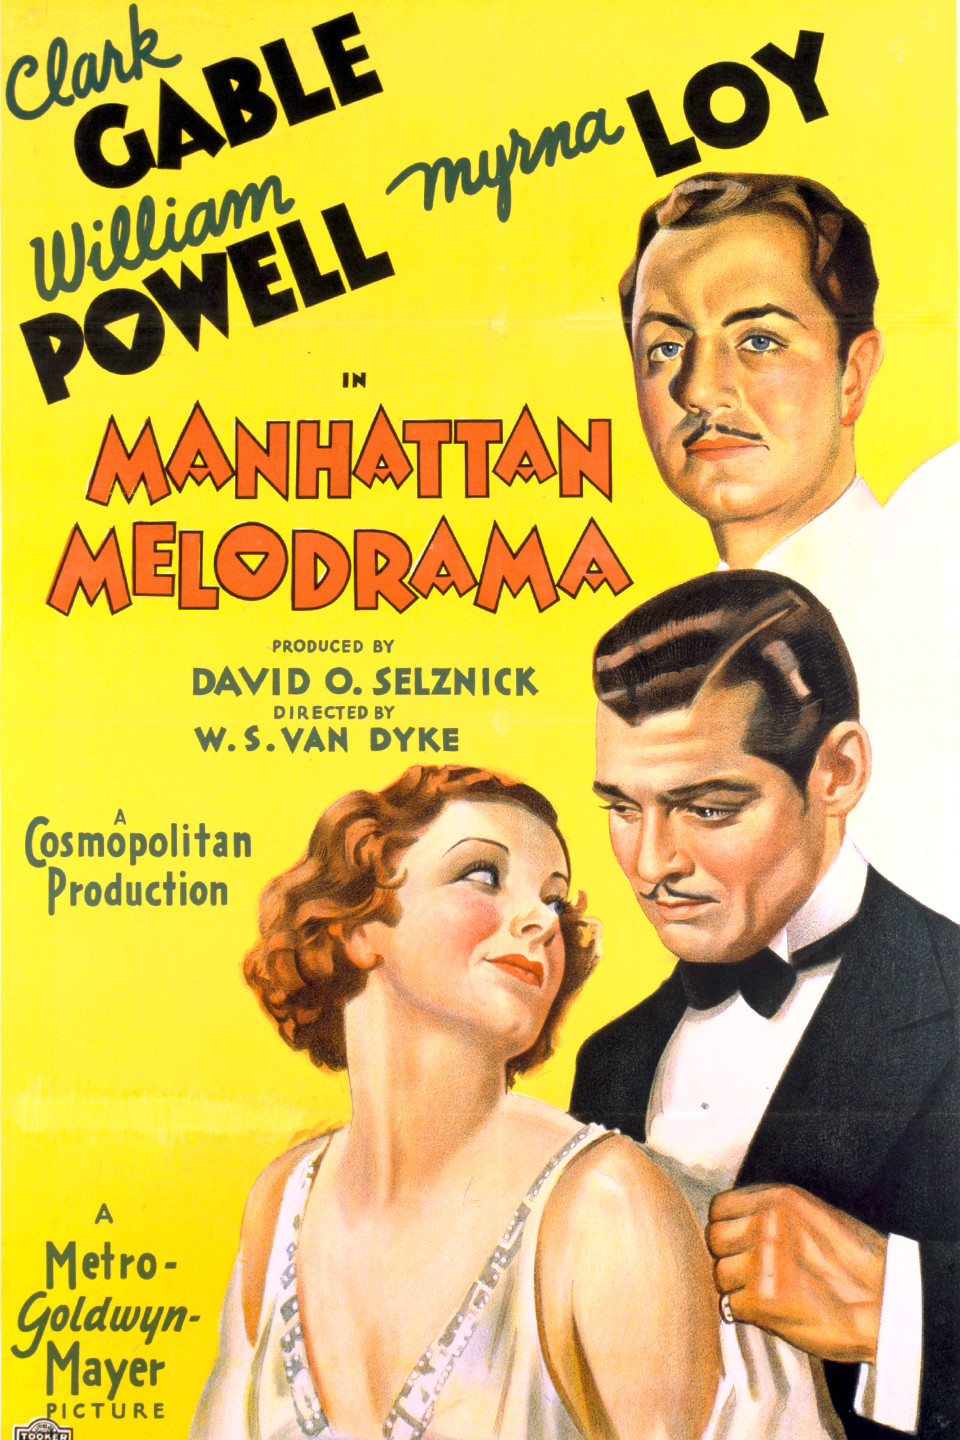 MANHATTAN MELODRAMMA (1934)